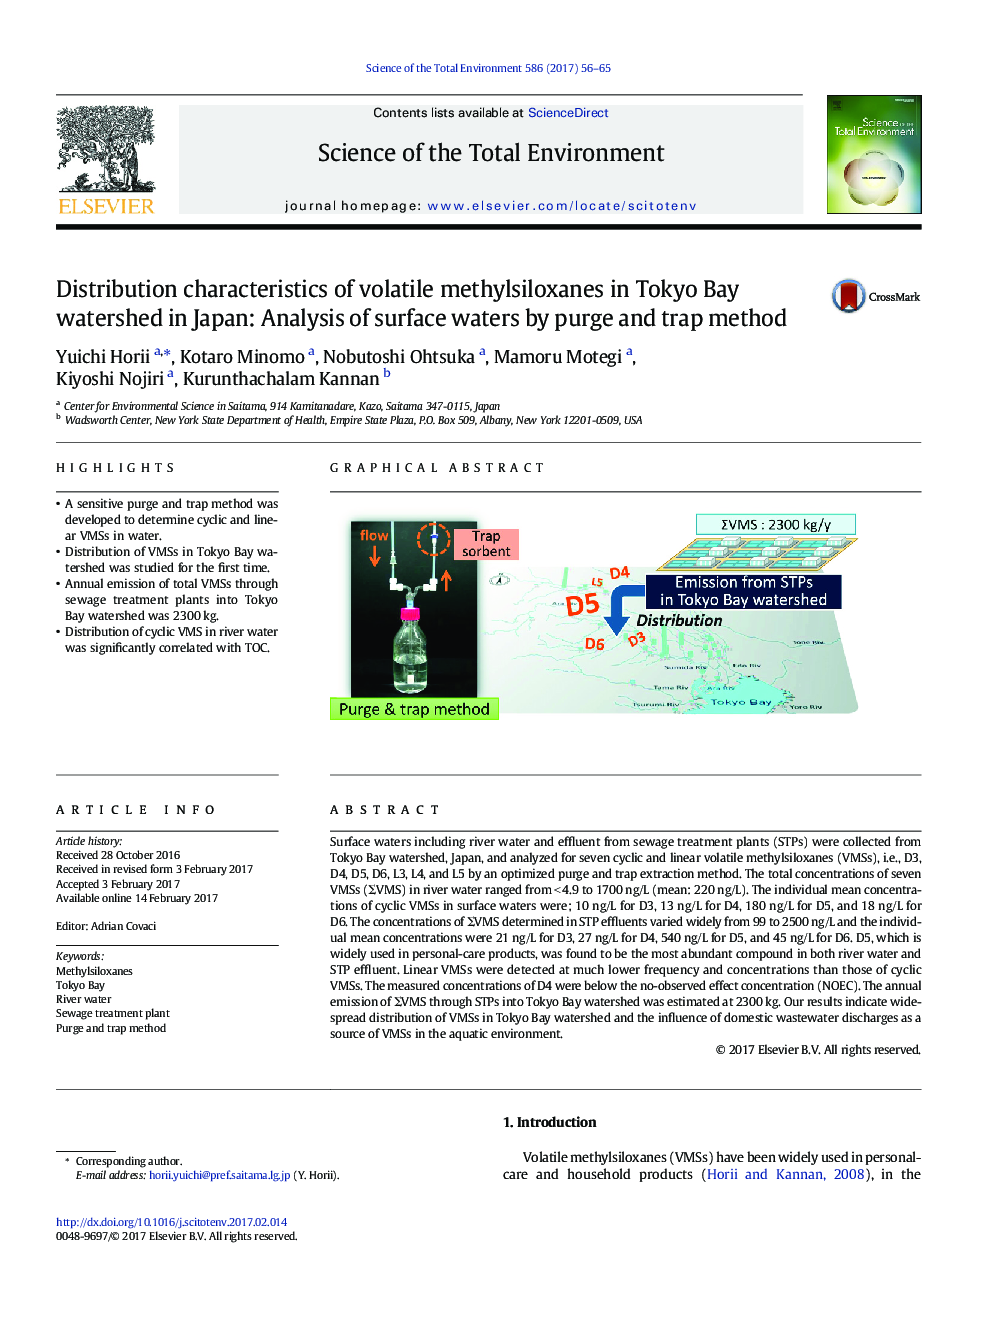 ویژگی های توزیع متیسیلوکسان های فرار در حوزه آبخیز توکیو در ژاپن: تجزیه و تحلیل آب های سطحی با روش خالص سازی و تله 